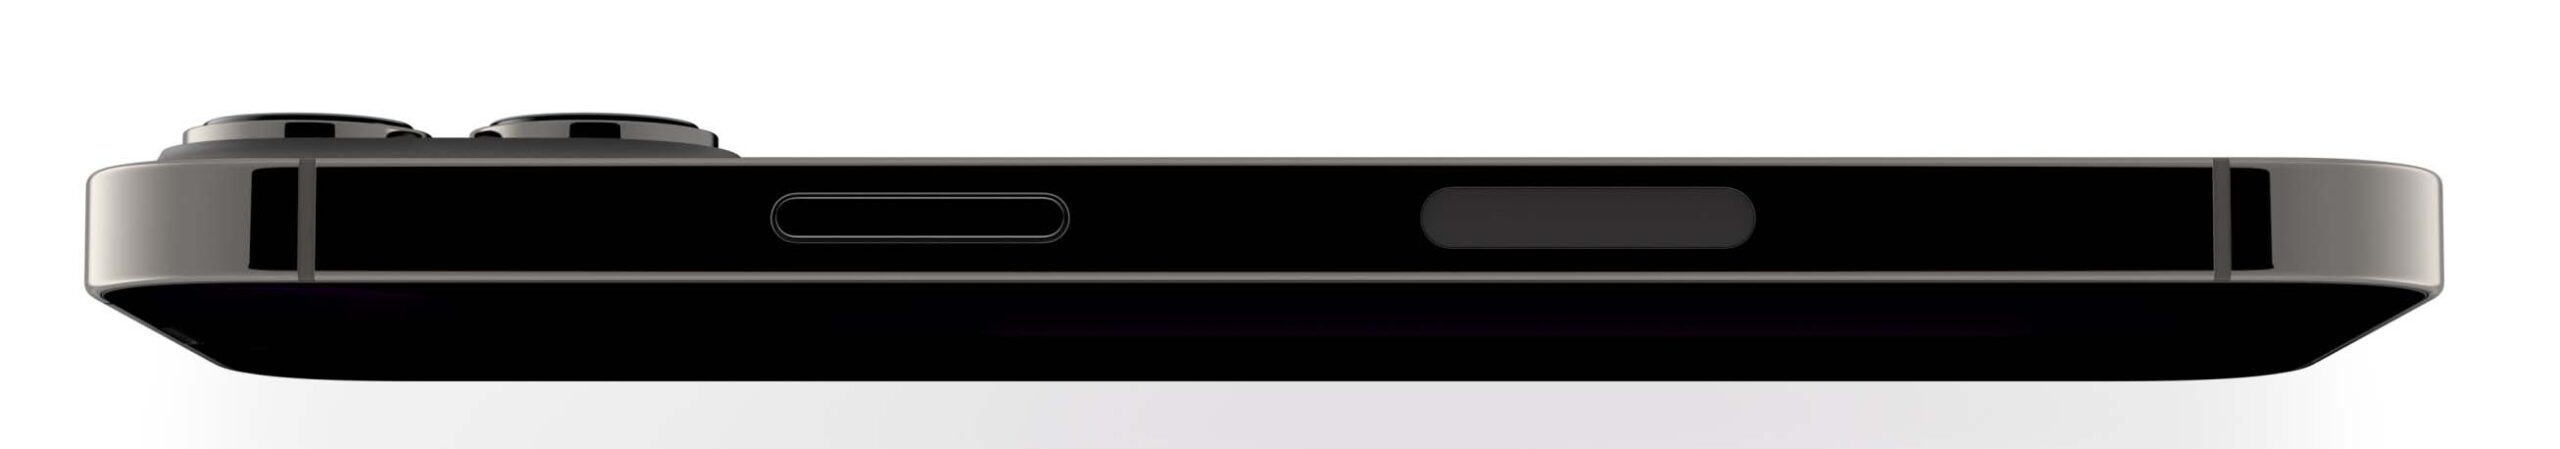 iPhone 13 Pro e iPhone 13 Pro Max, le novità in un solo articolo